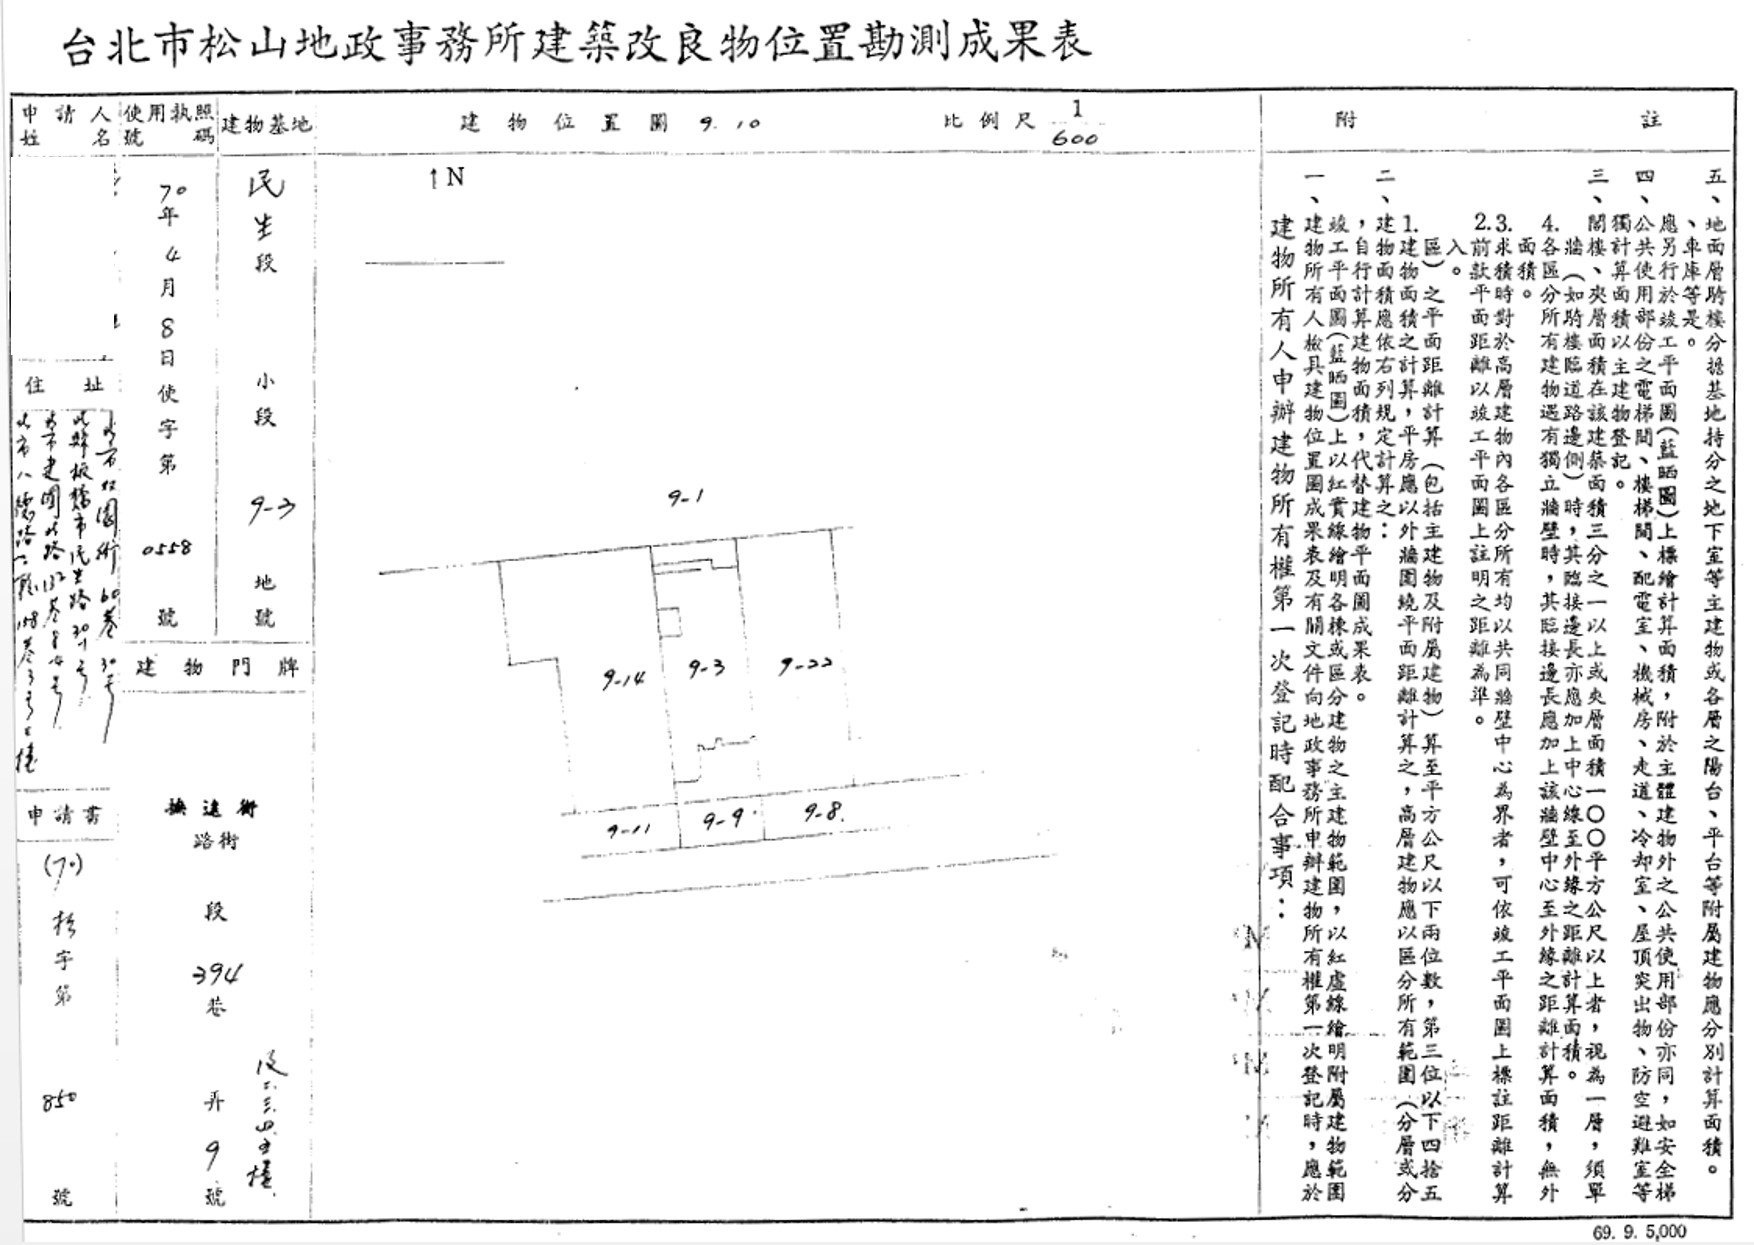 民國70年建築改良物勘測成果表(試辦僅繪製建物位置圖)